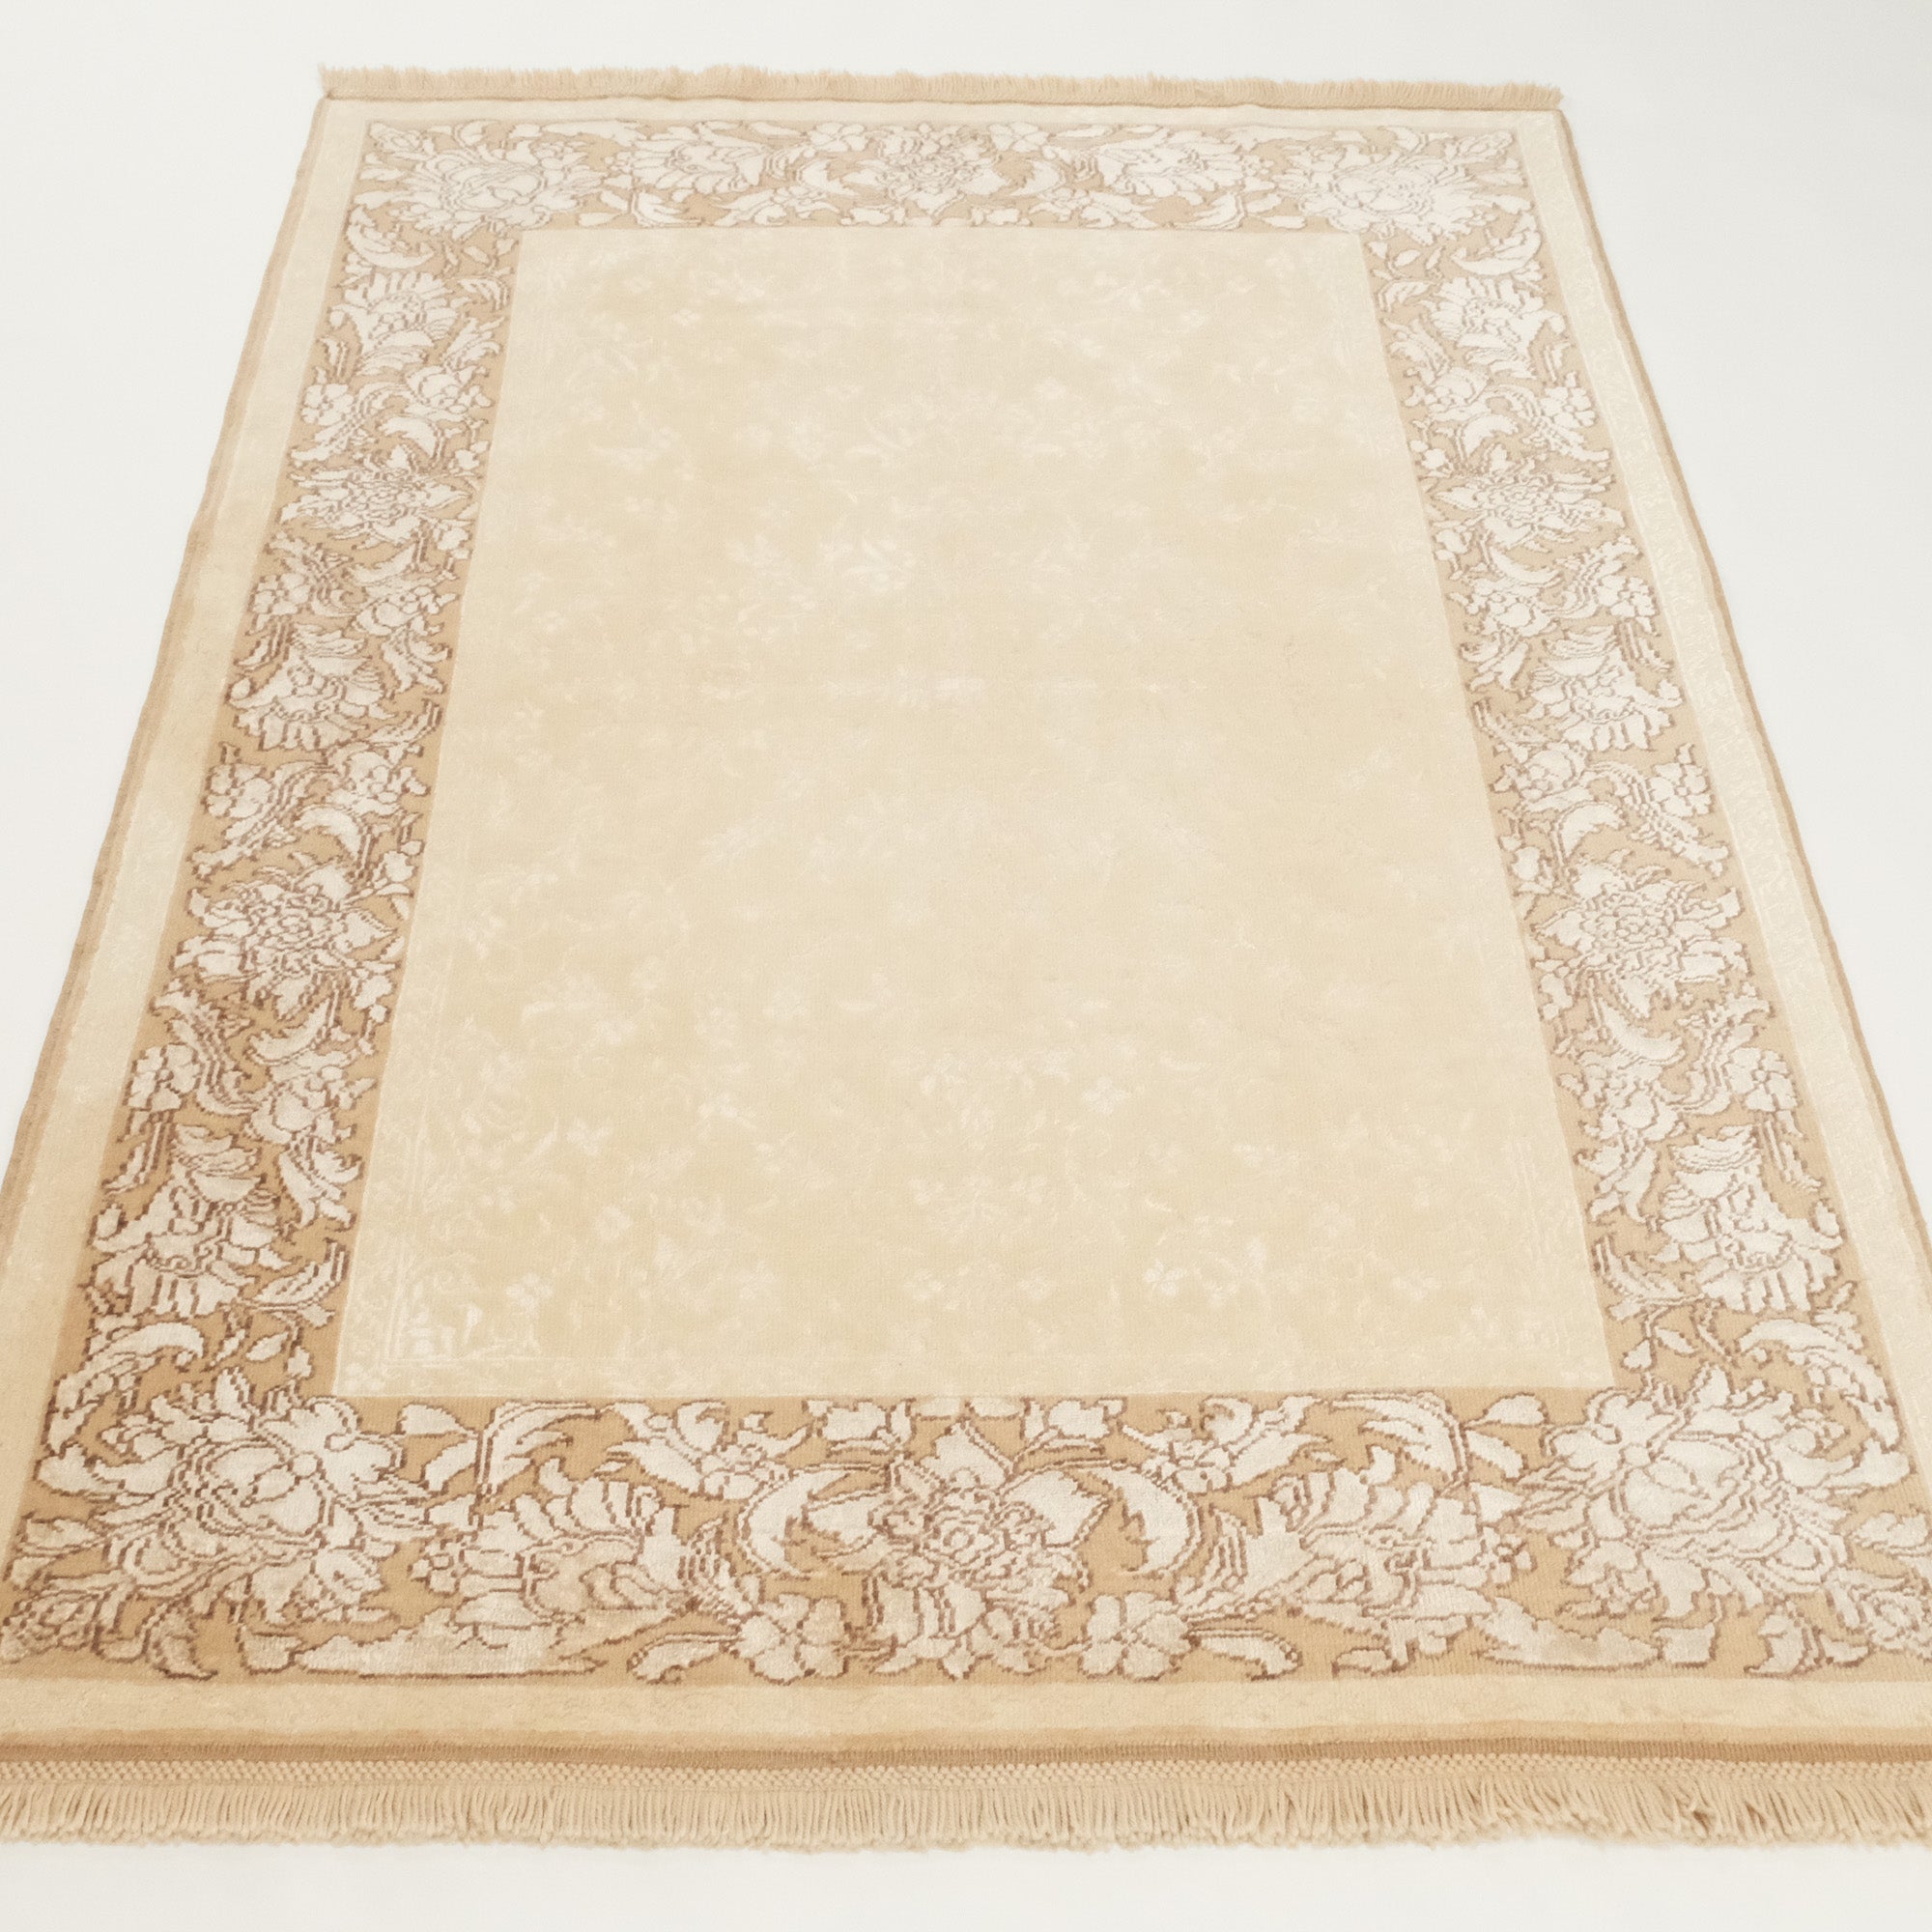 Harem Series Oushak Design Hand Woven Carpet